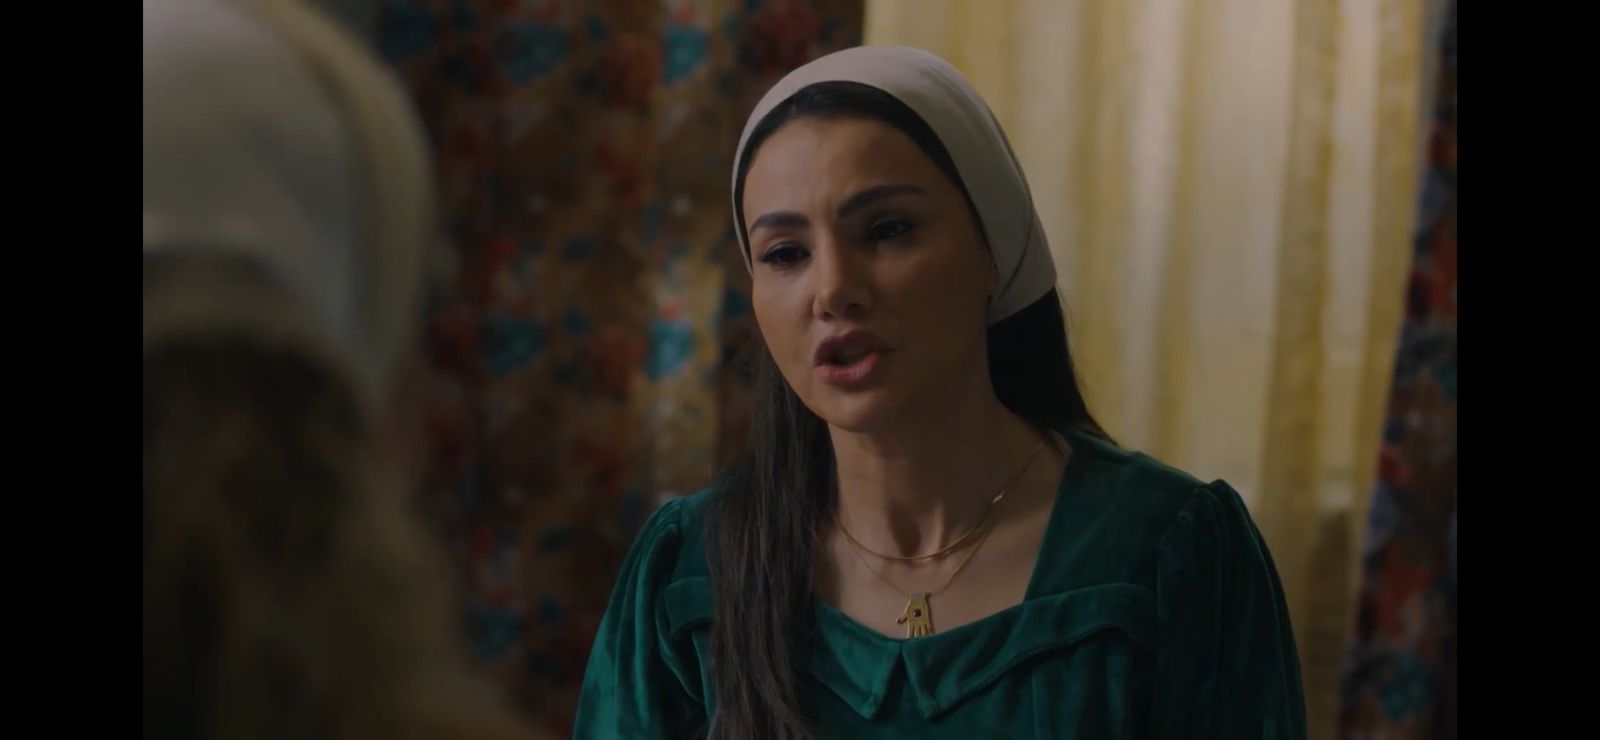 مسلسل حق عرب الحلقة 2  وفاء مكي تهدد دينا فؤاد بفضح أمرها إذا لم تكمل عملها معها (2)